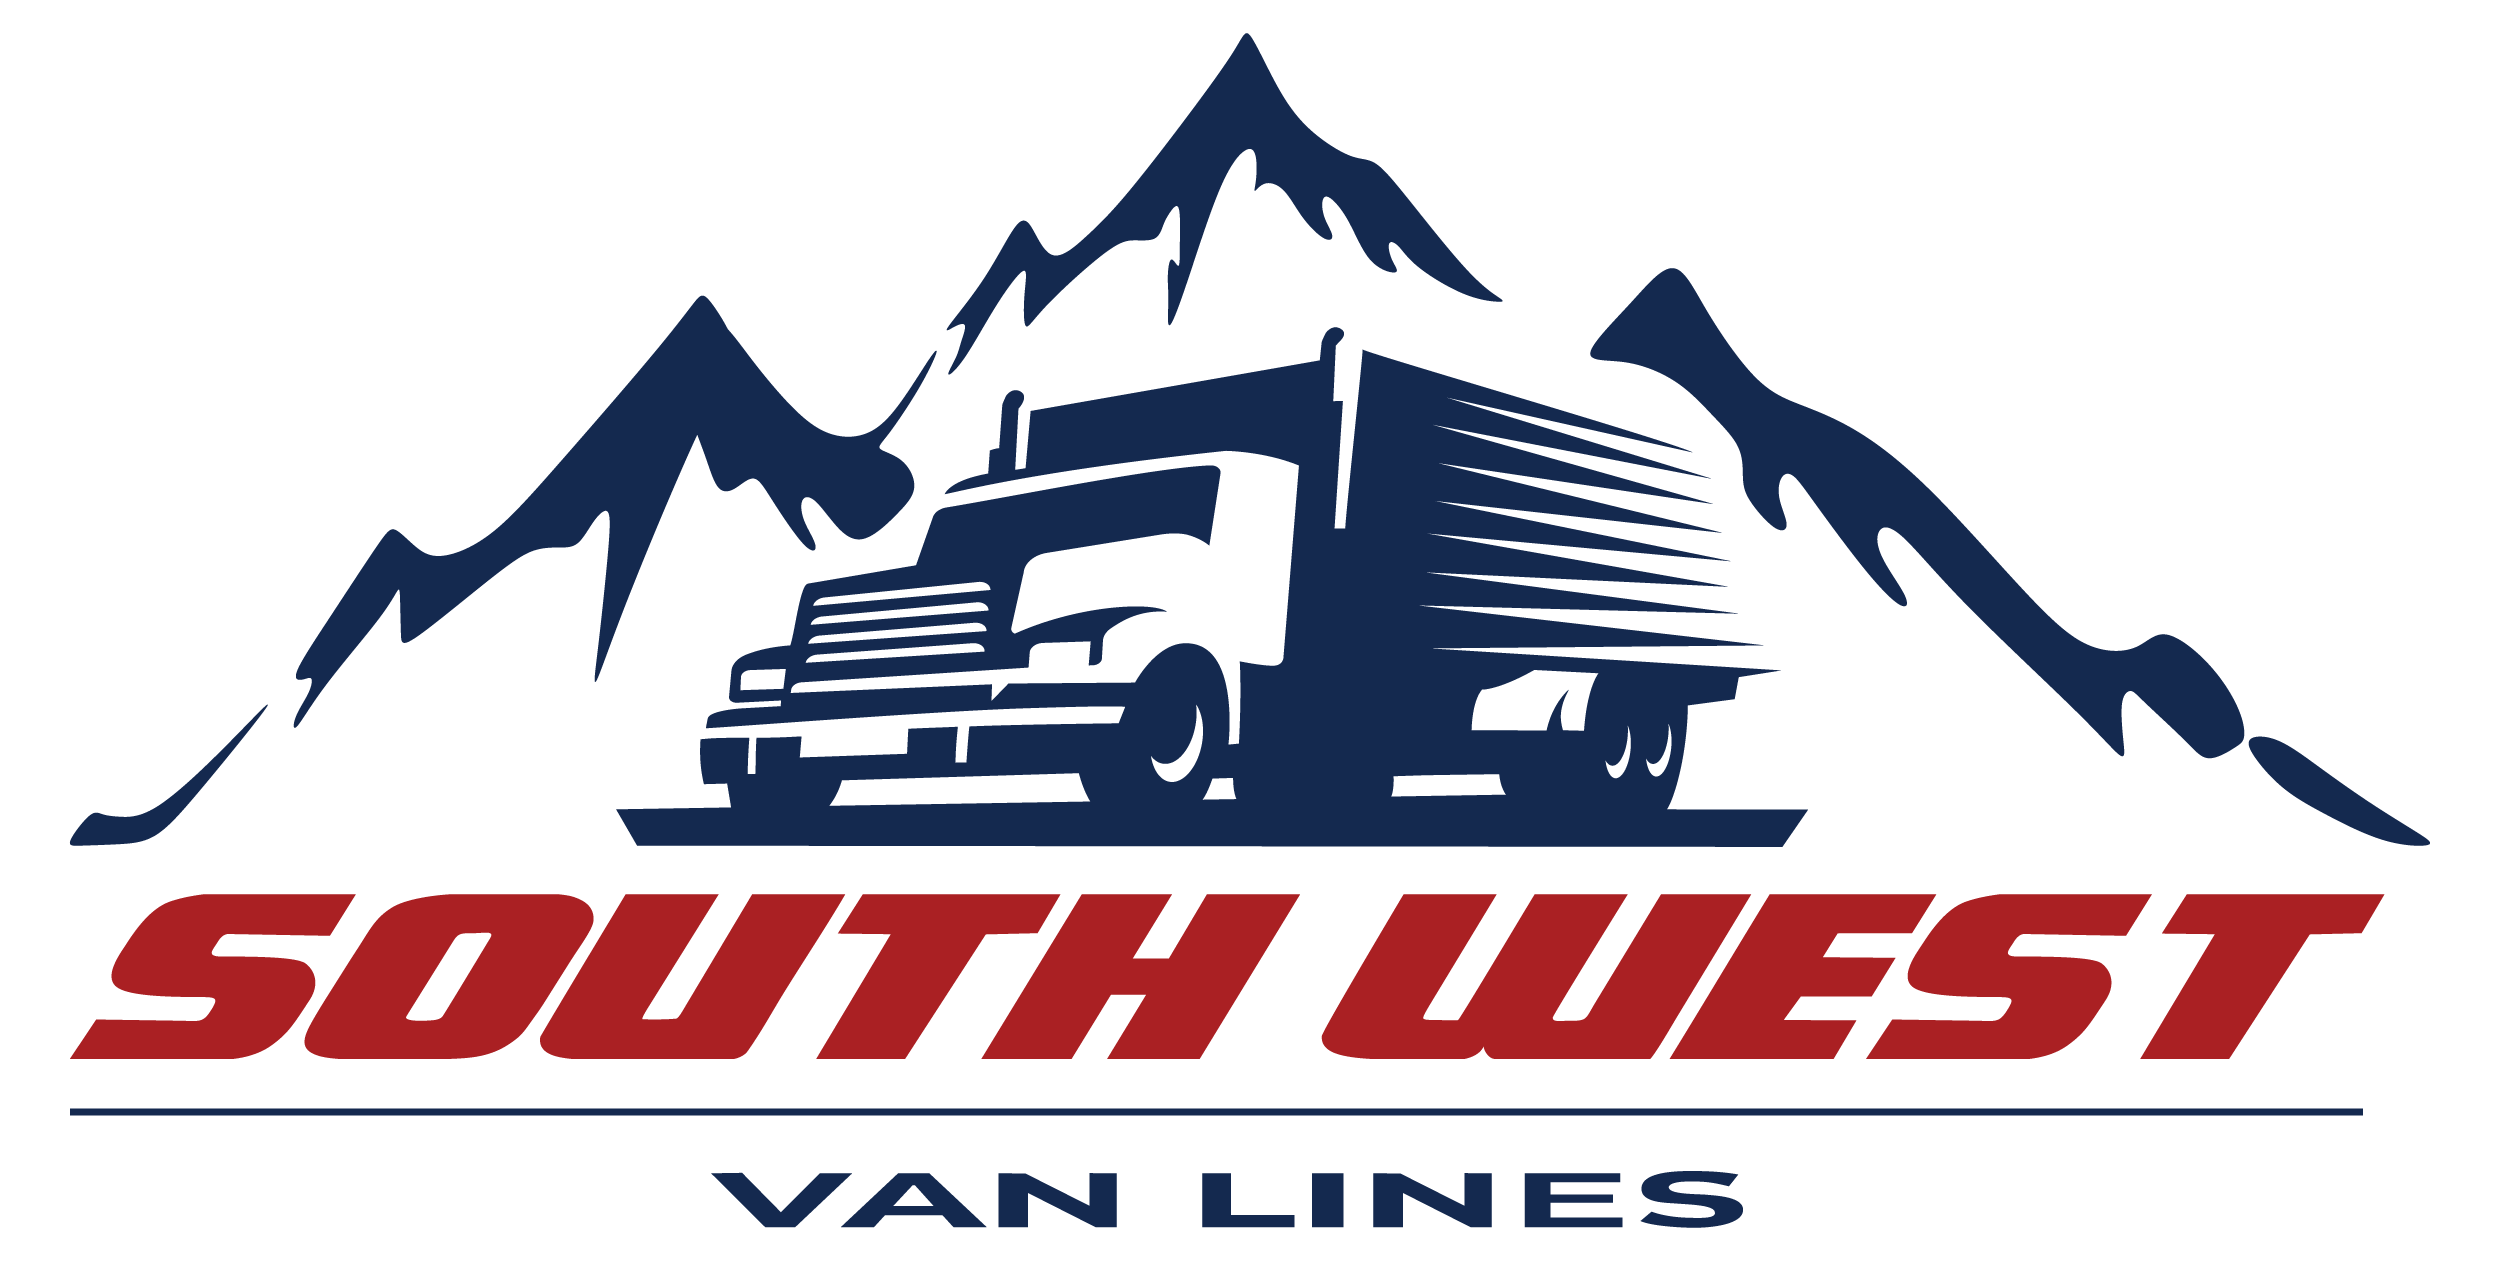 South West Van Lines